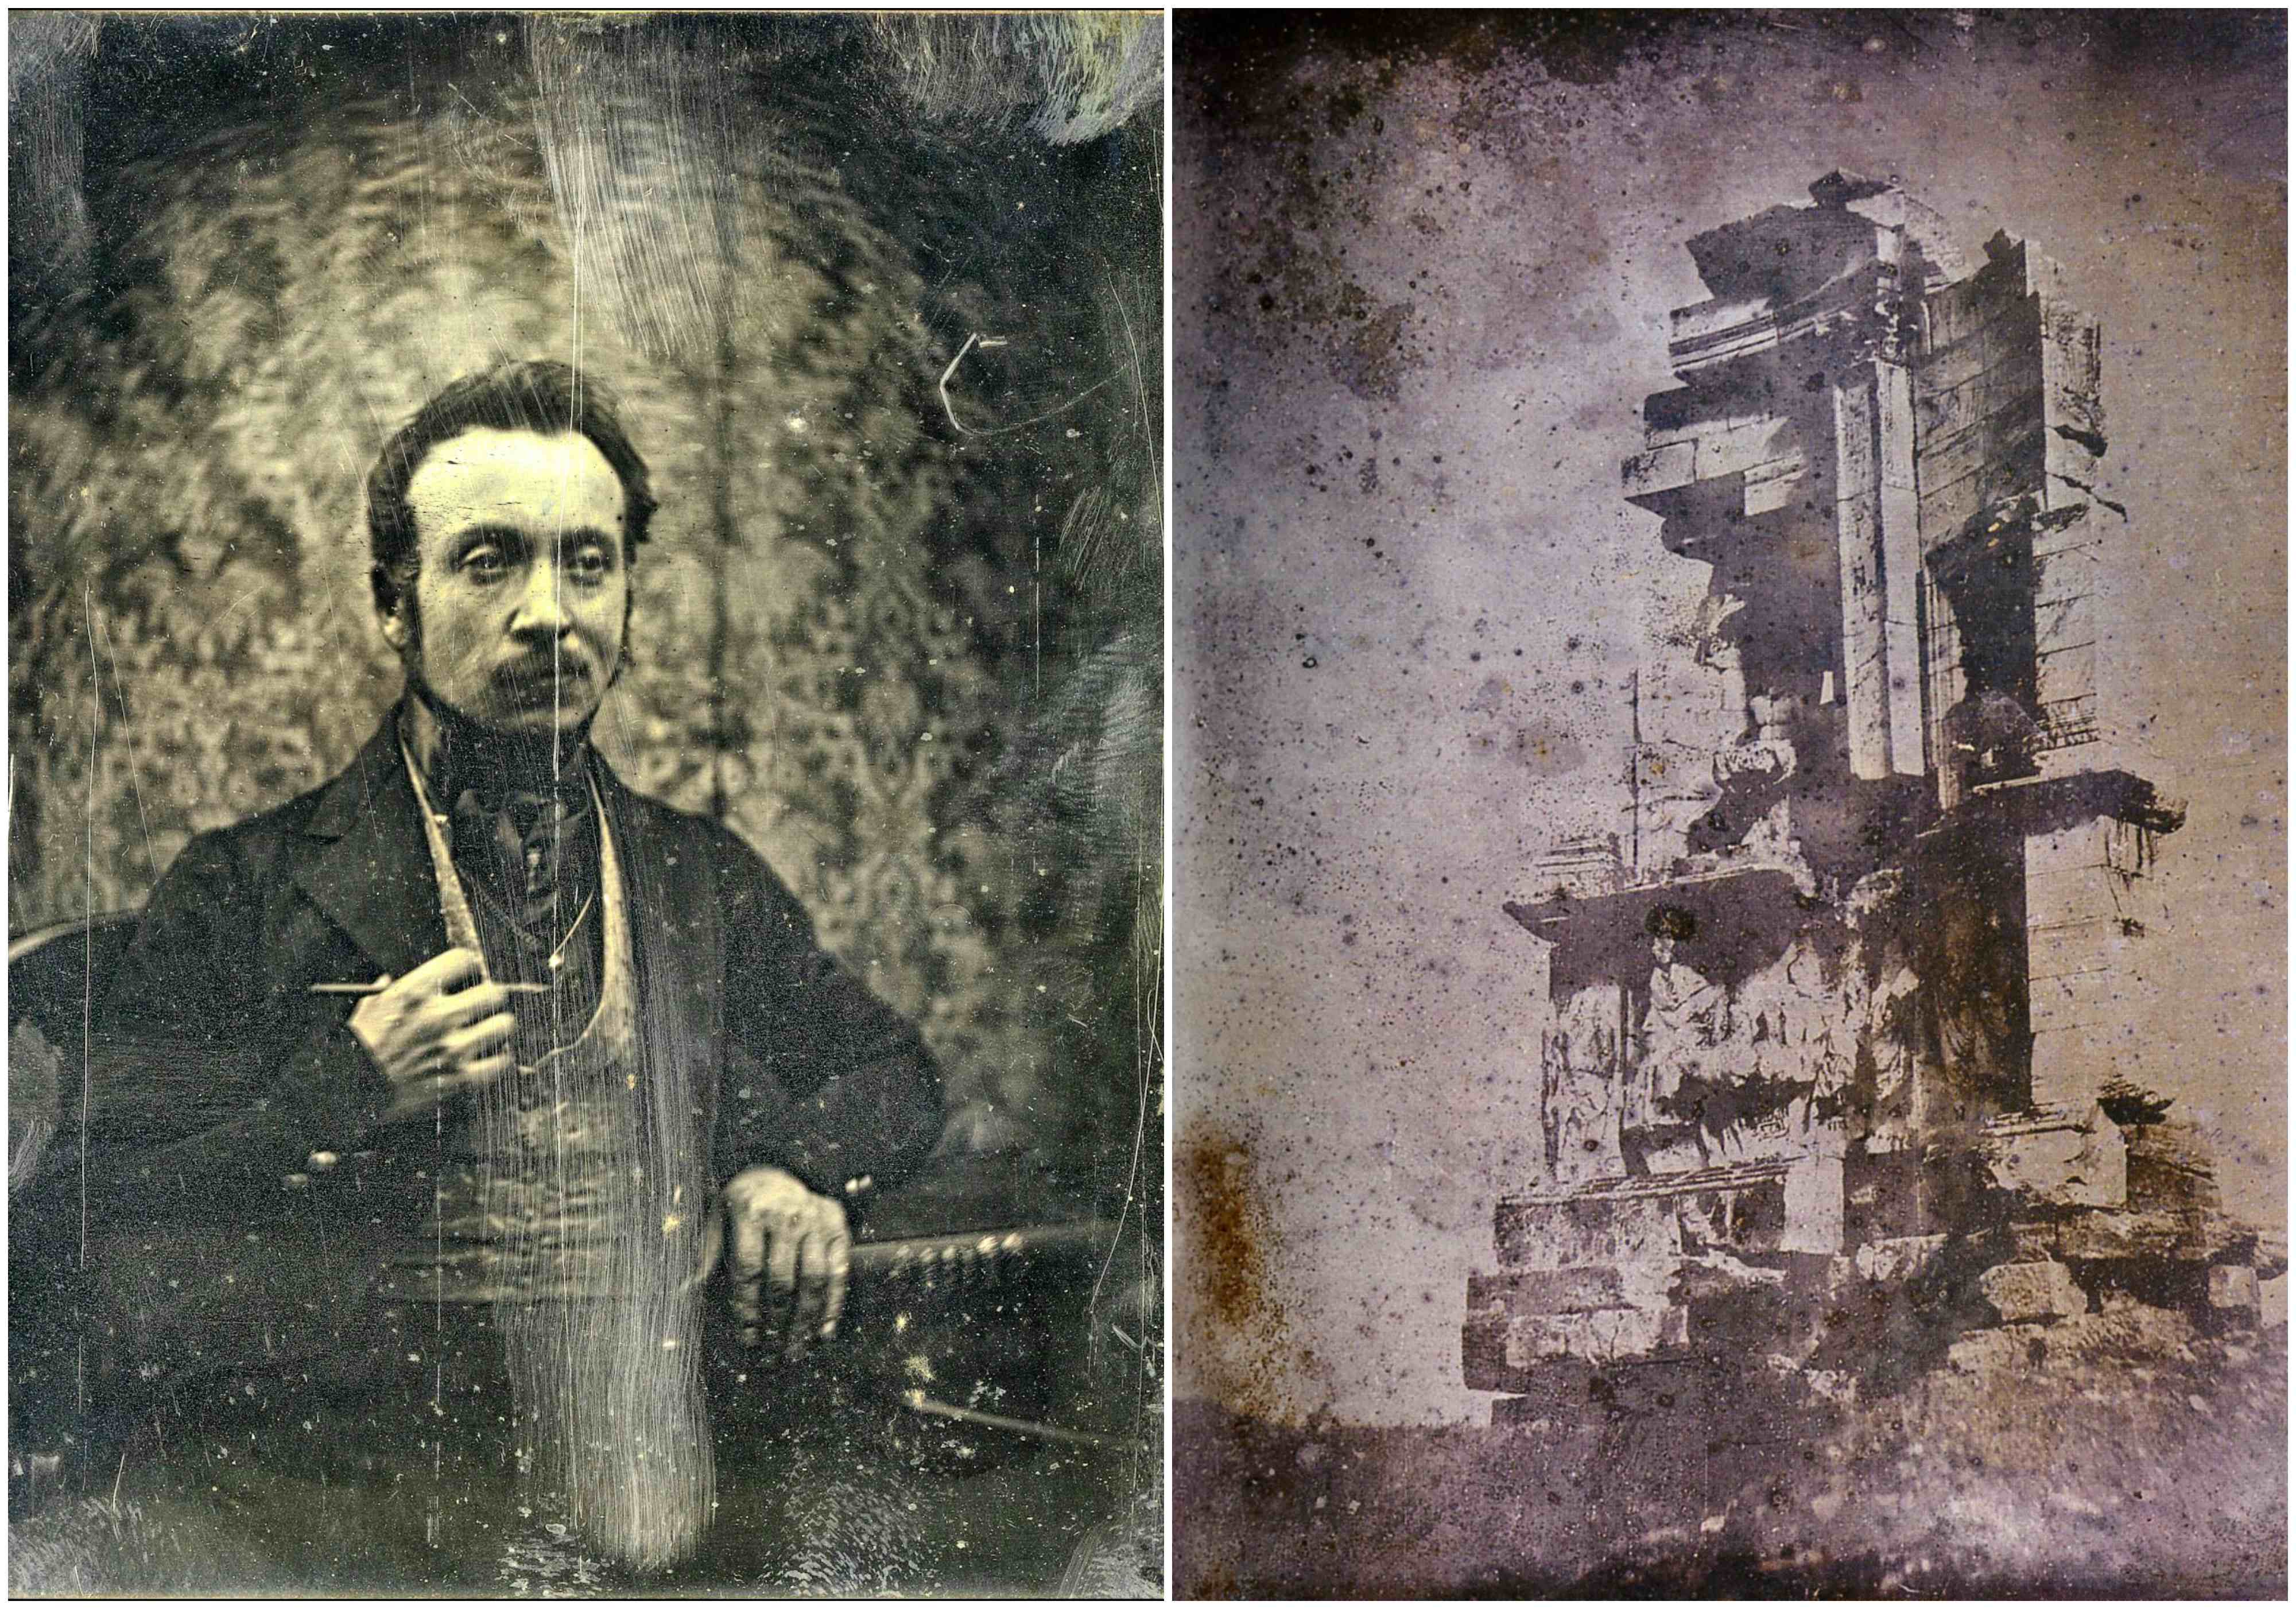 Joseph collage 1840